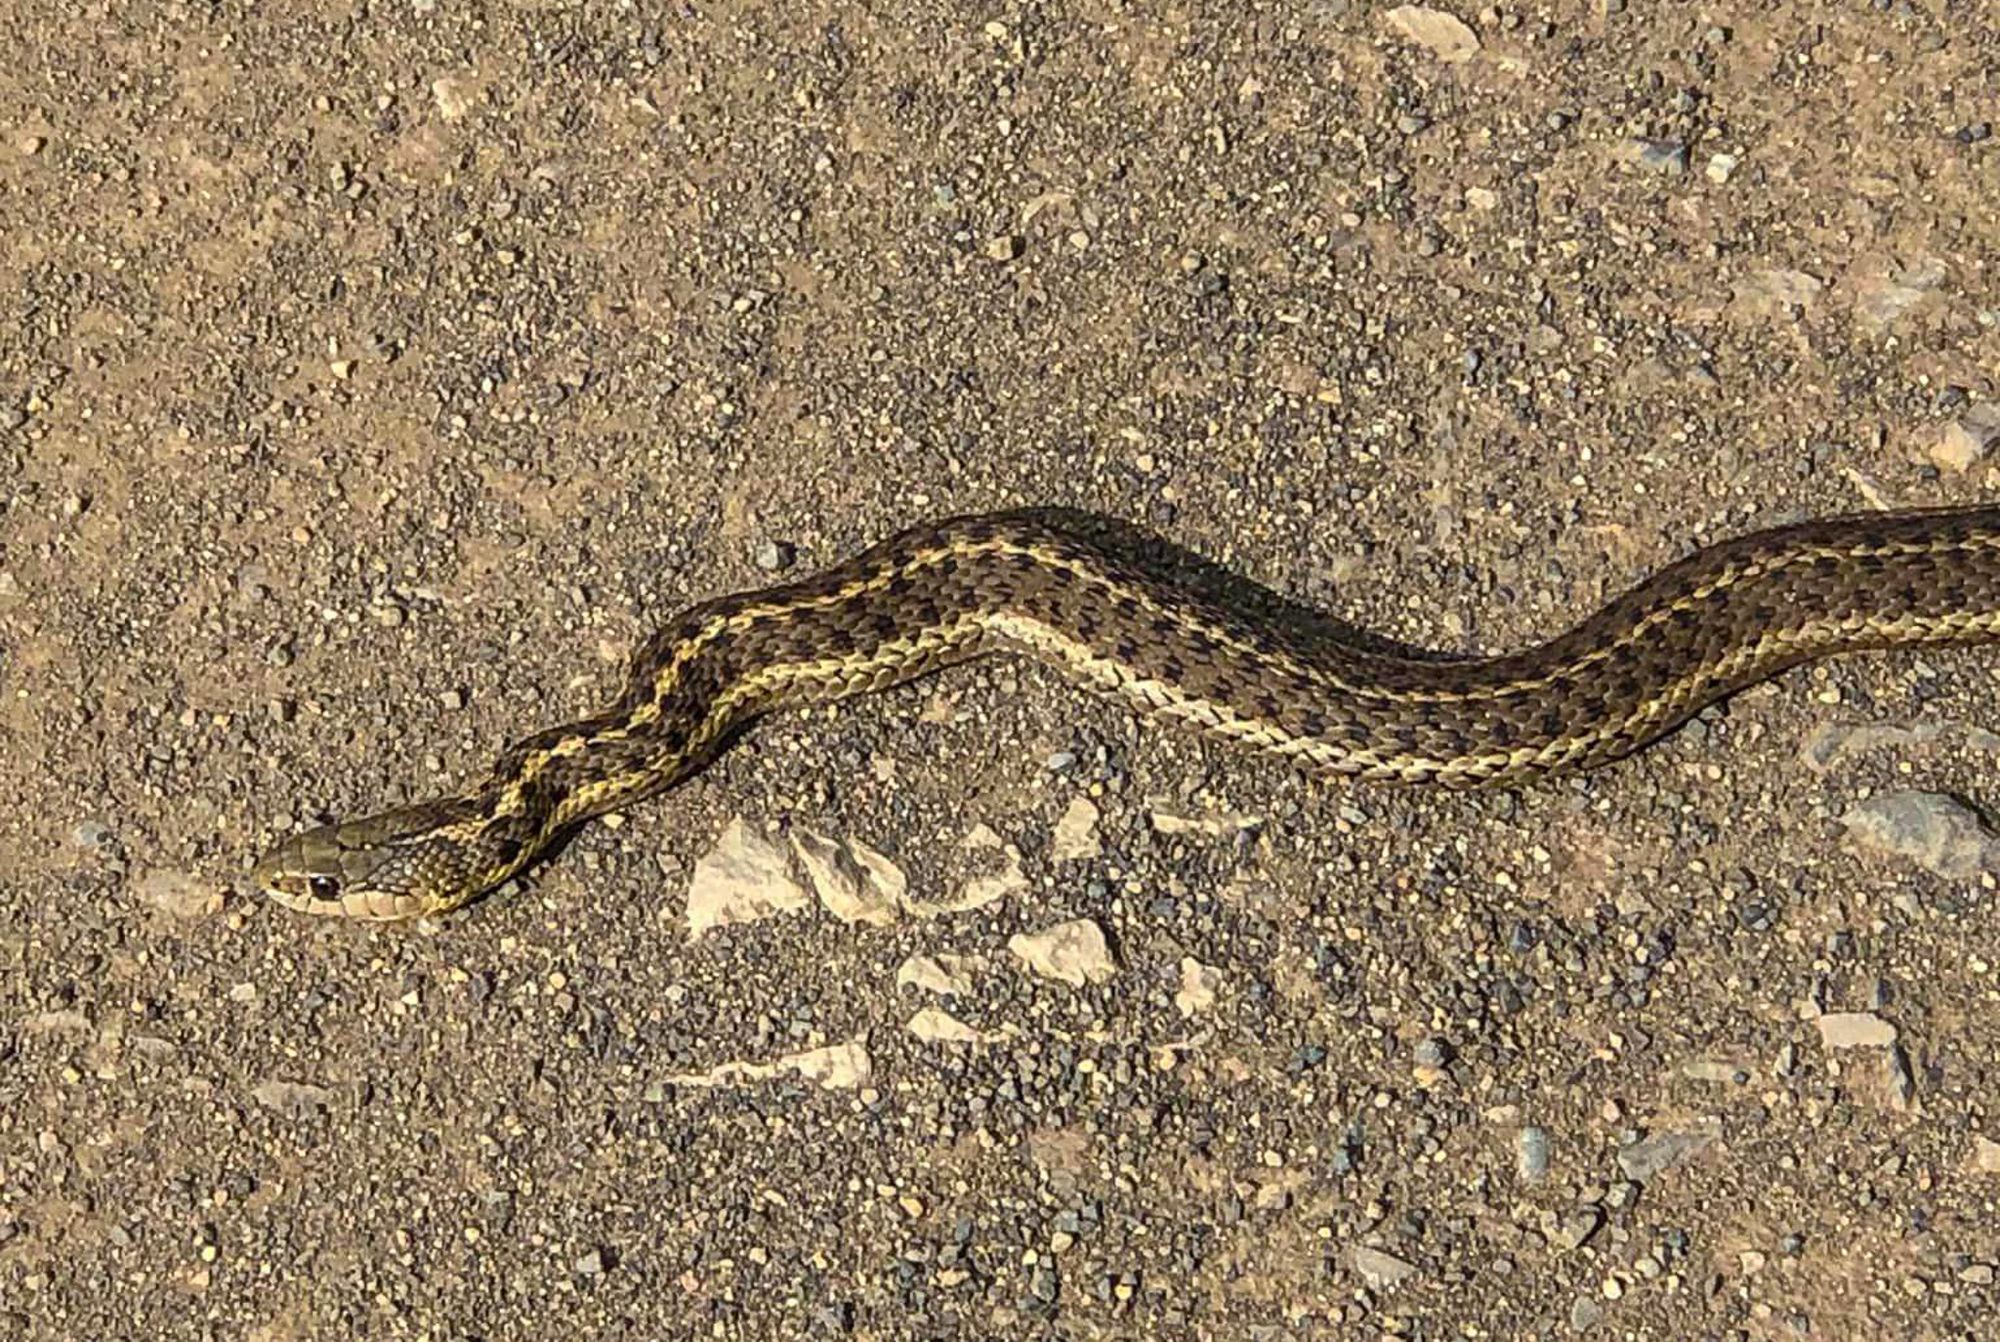 wandering garter snake